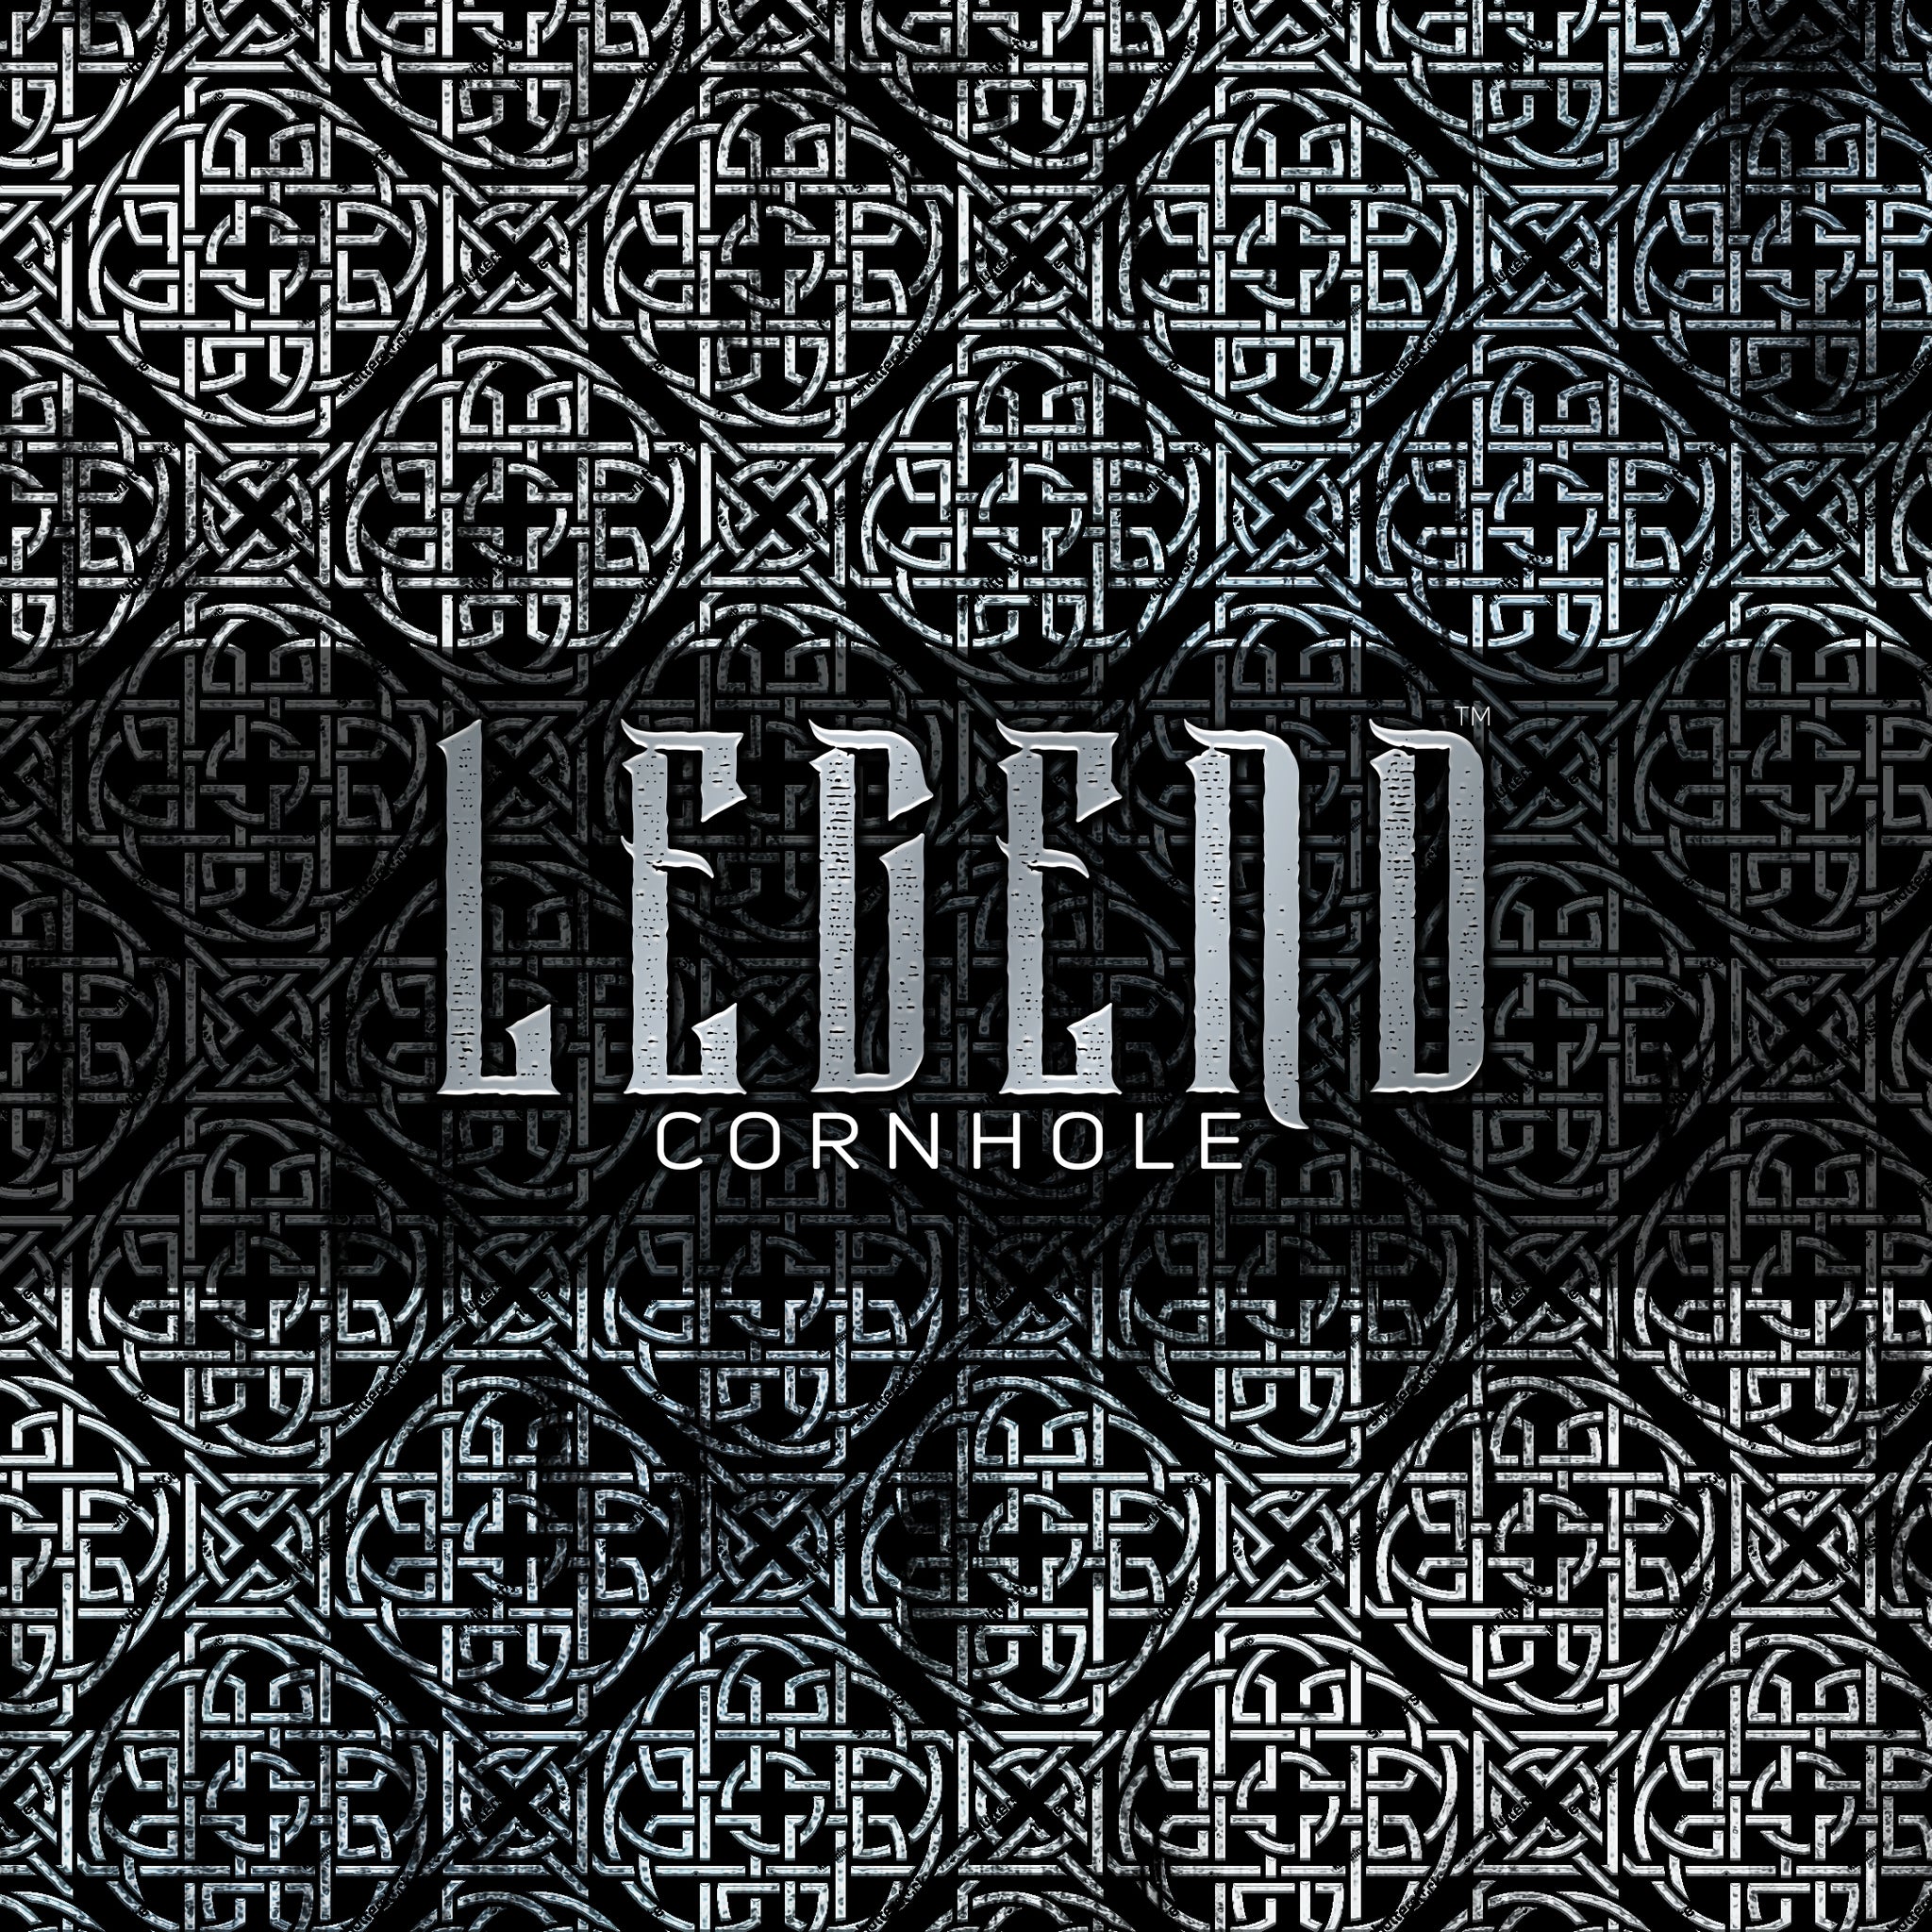 Legend™ "ALL IN™" (Elite) Premium Cornhole Bag (set of 4) - (CC)